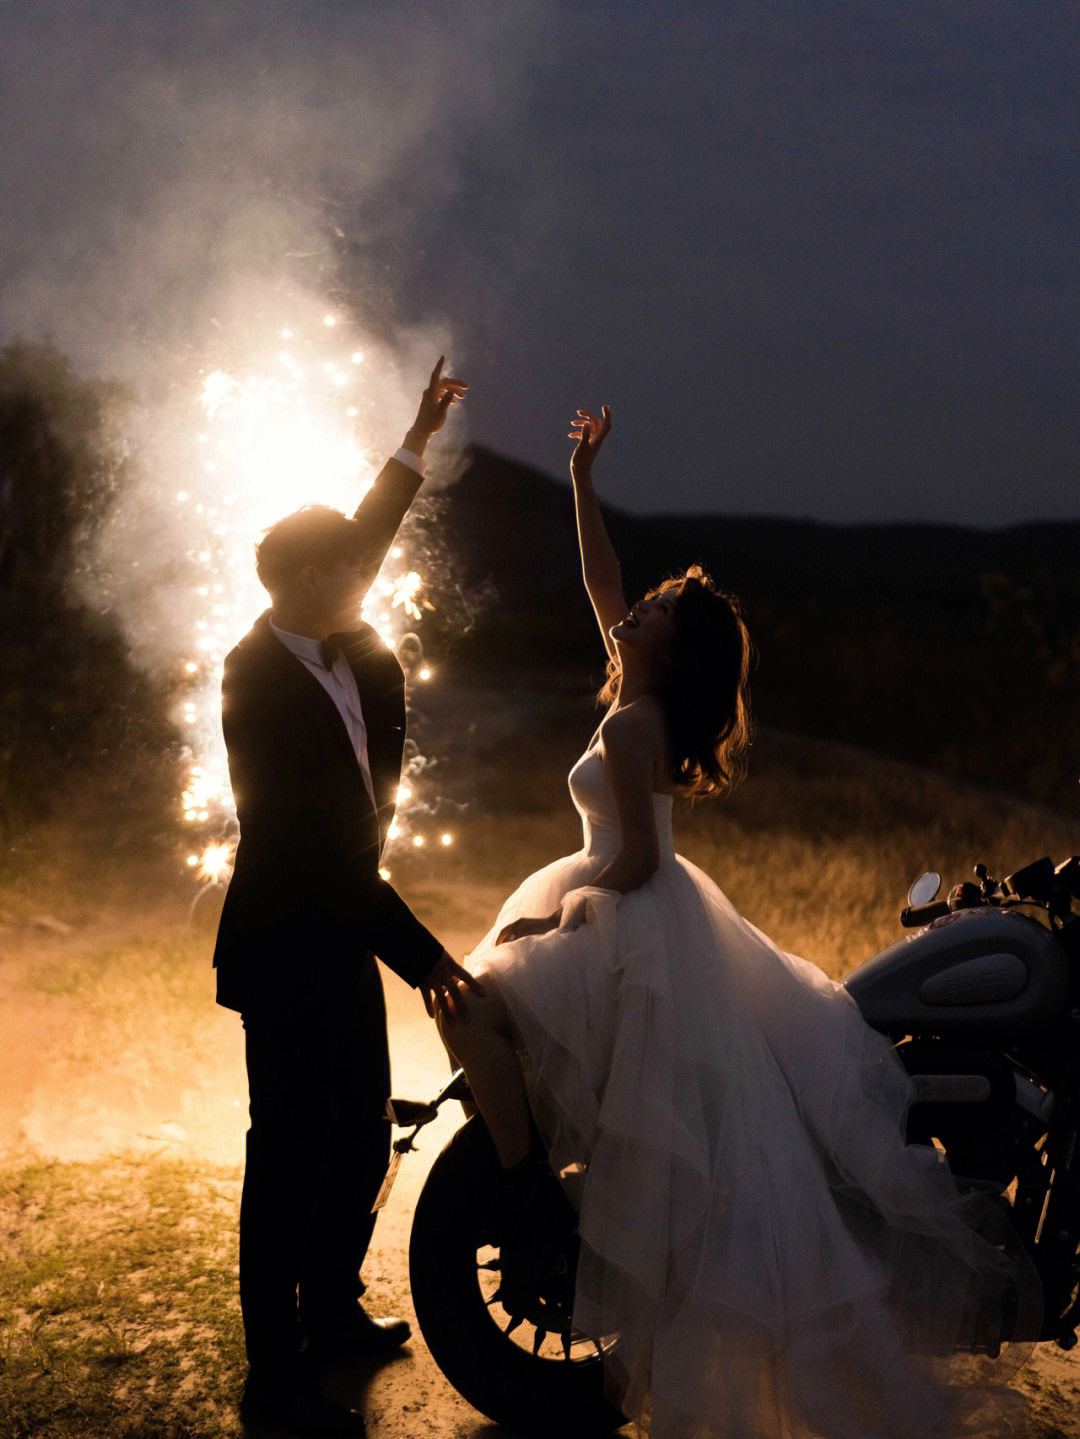 摩托车婚纱照图片大全图片